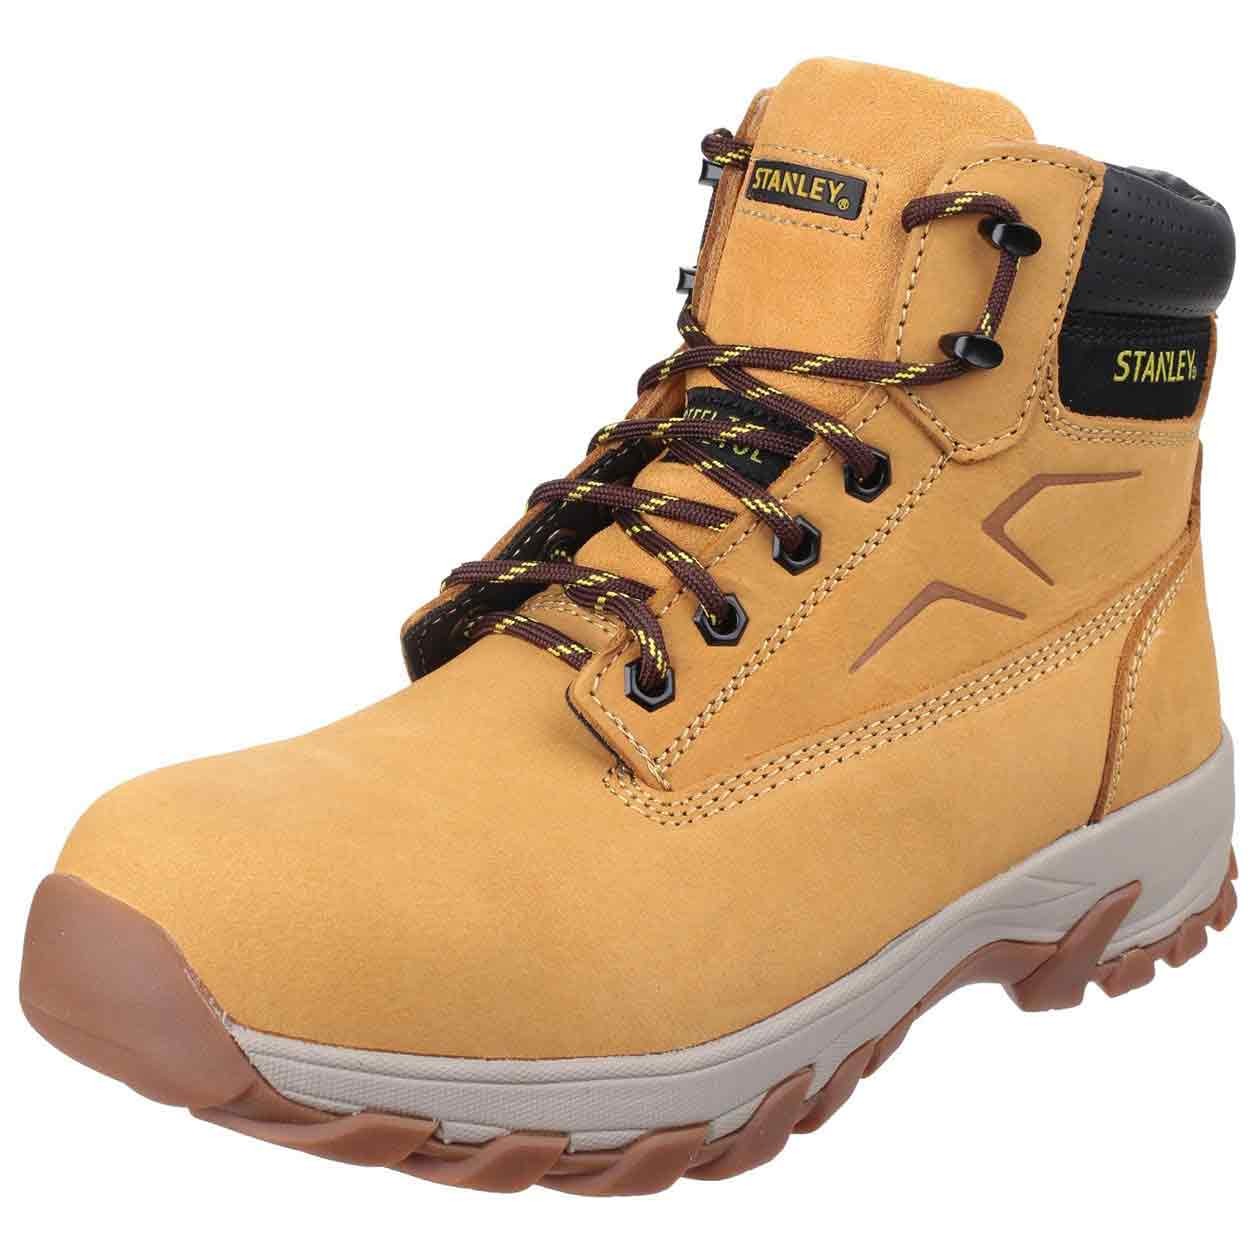 Stanley Tradesman Safety Boot Honey - Standard Safety Boots - Mens Safety  Boots & Shoes - Safety Footwear - Best Workwear